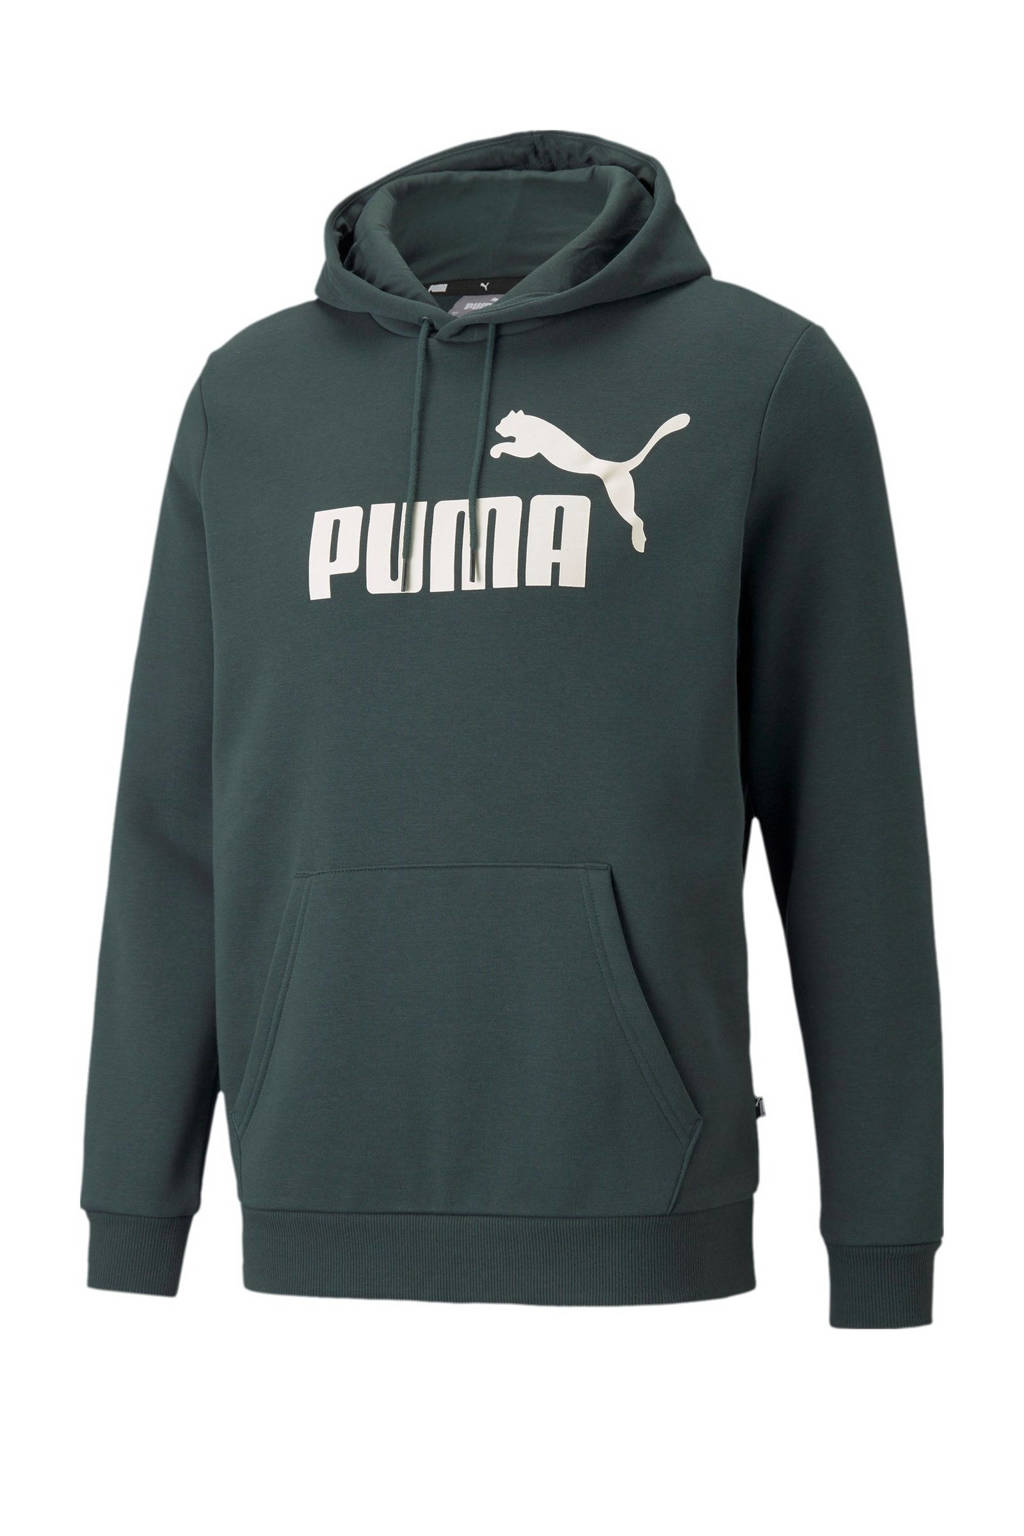 Puma hoodie met logo groen, Groen